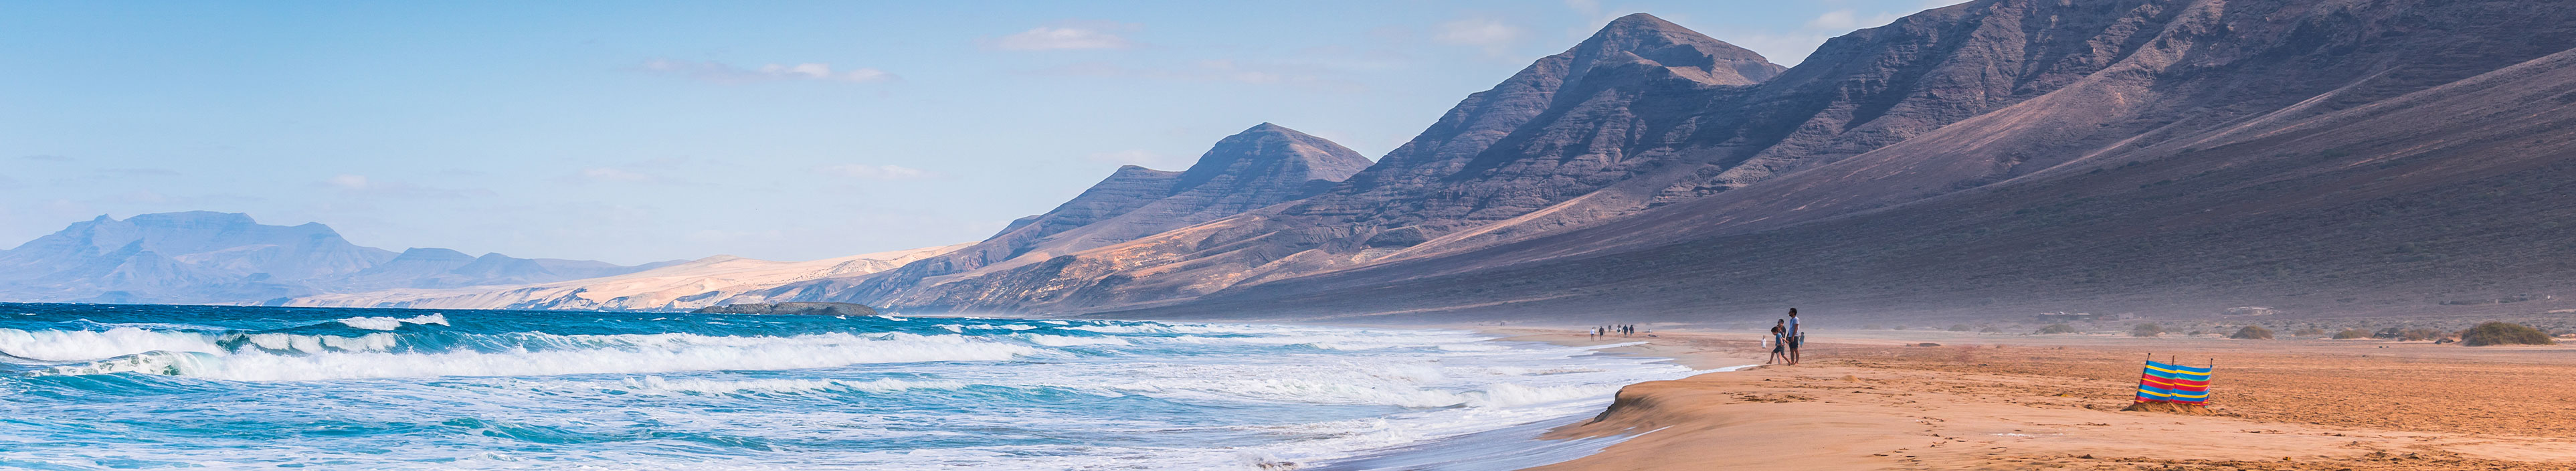 Urlaub Gran Canaria. Meer mit hohen Wellen und Menschen die am langen weitläufigen Strand laufen. 